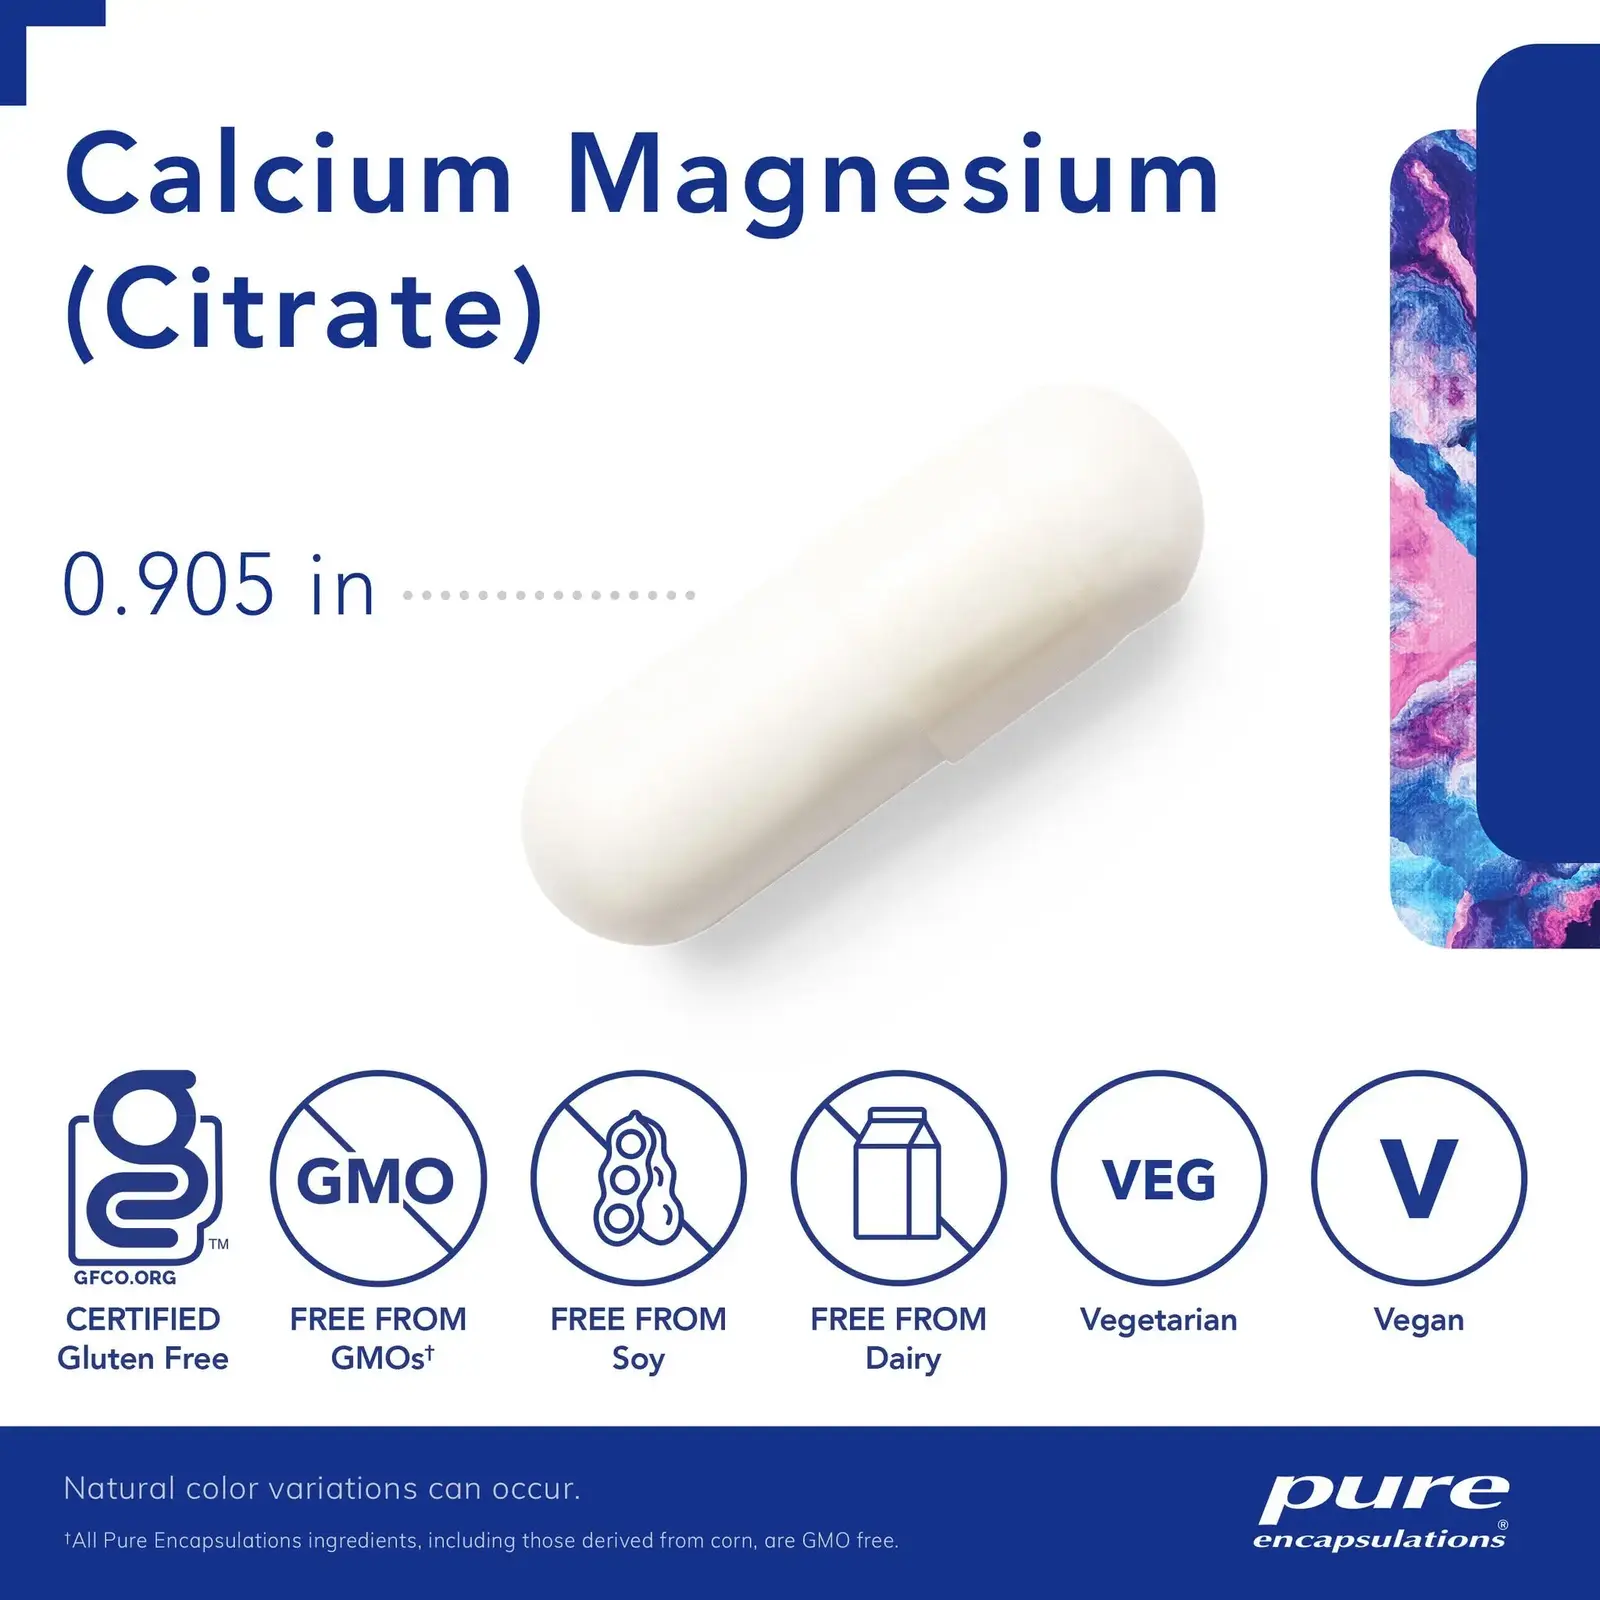 Calcium/Magnesium (citrate)